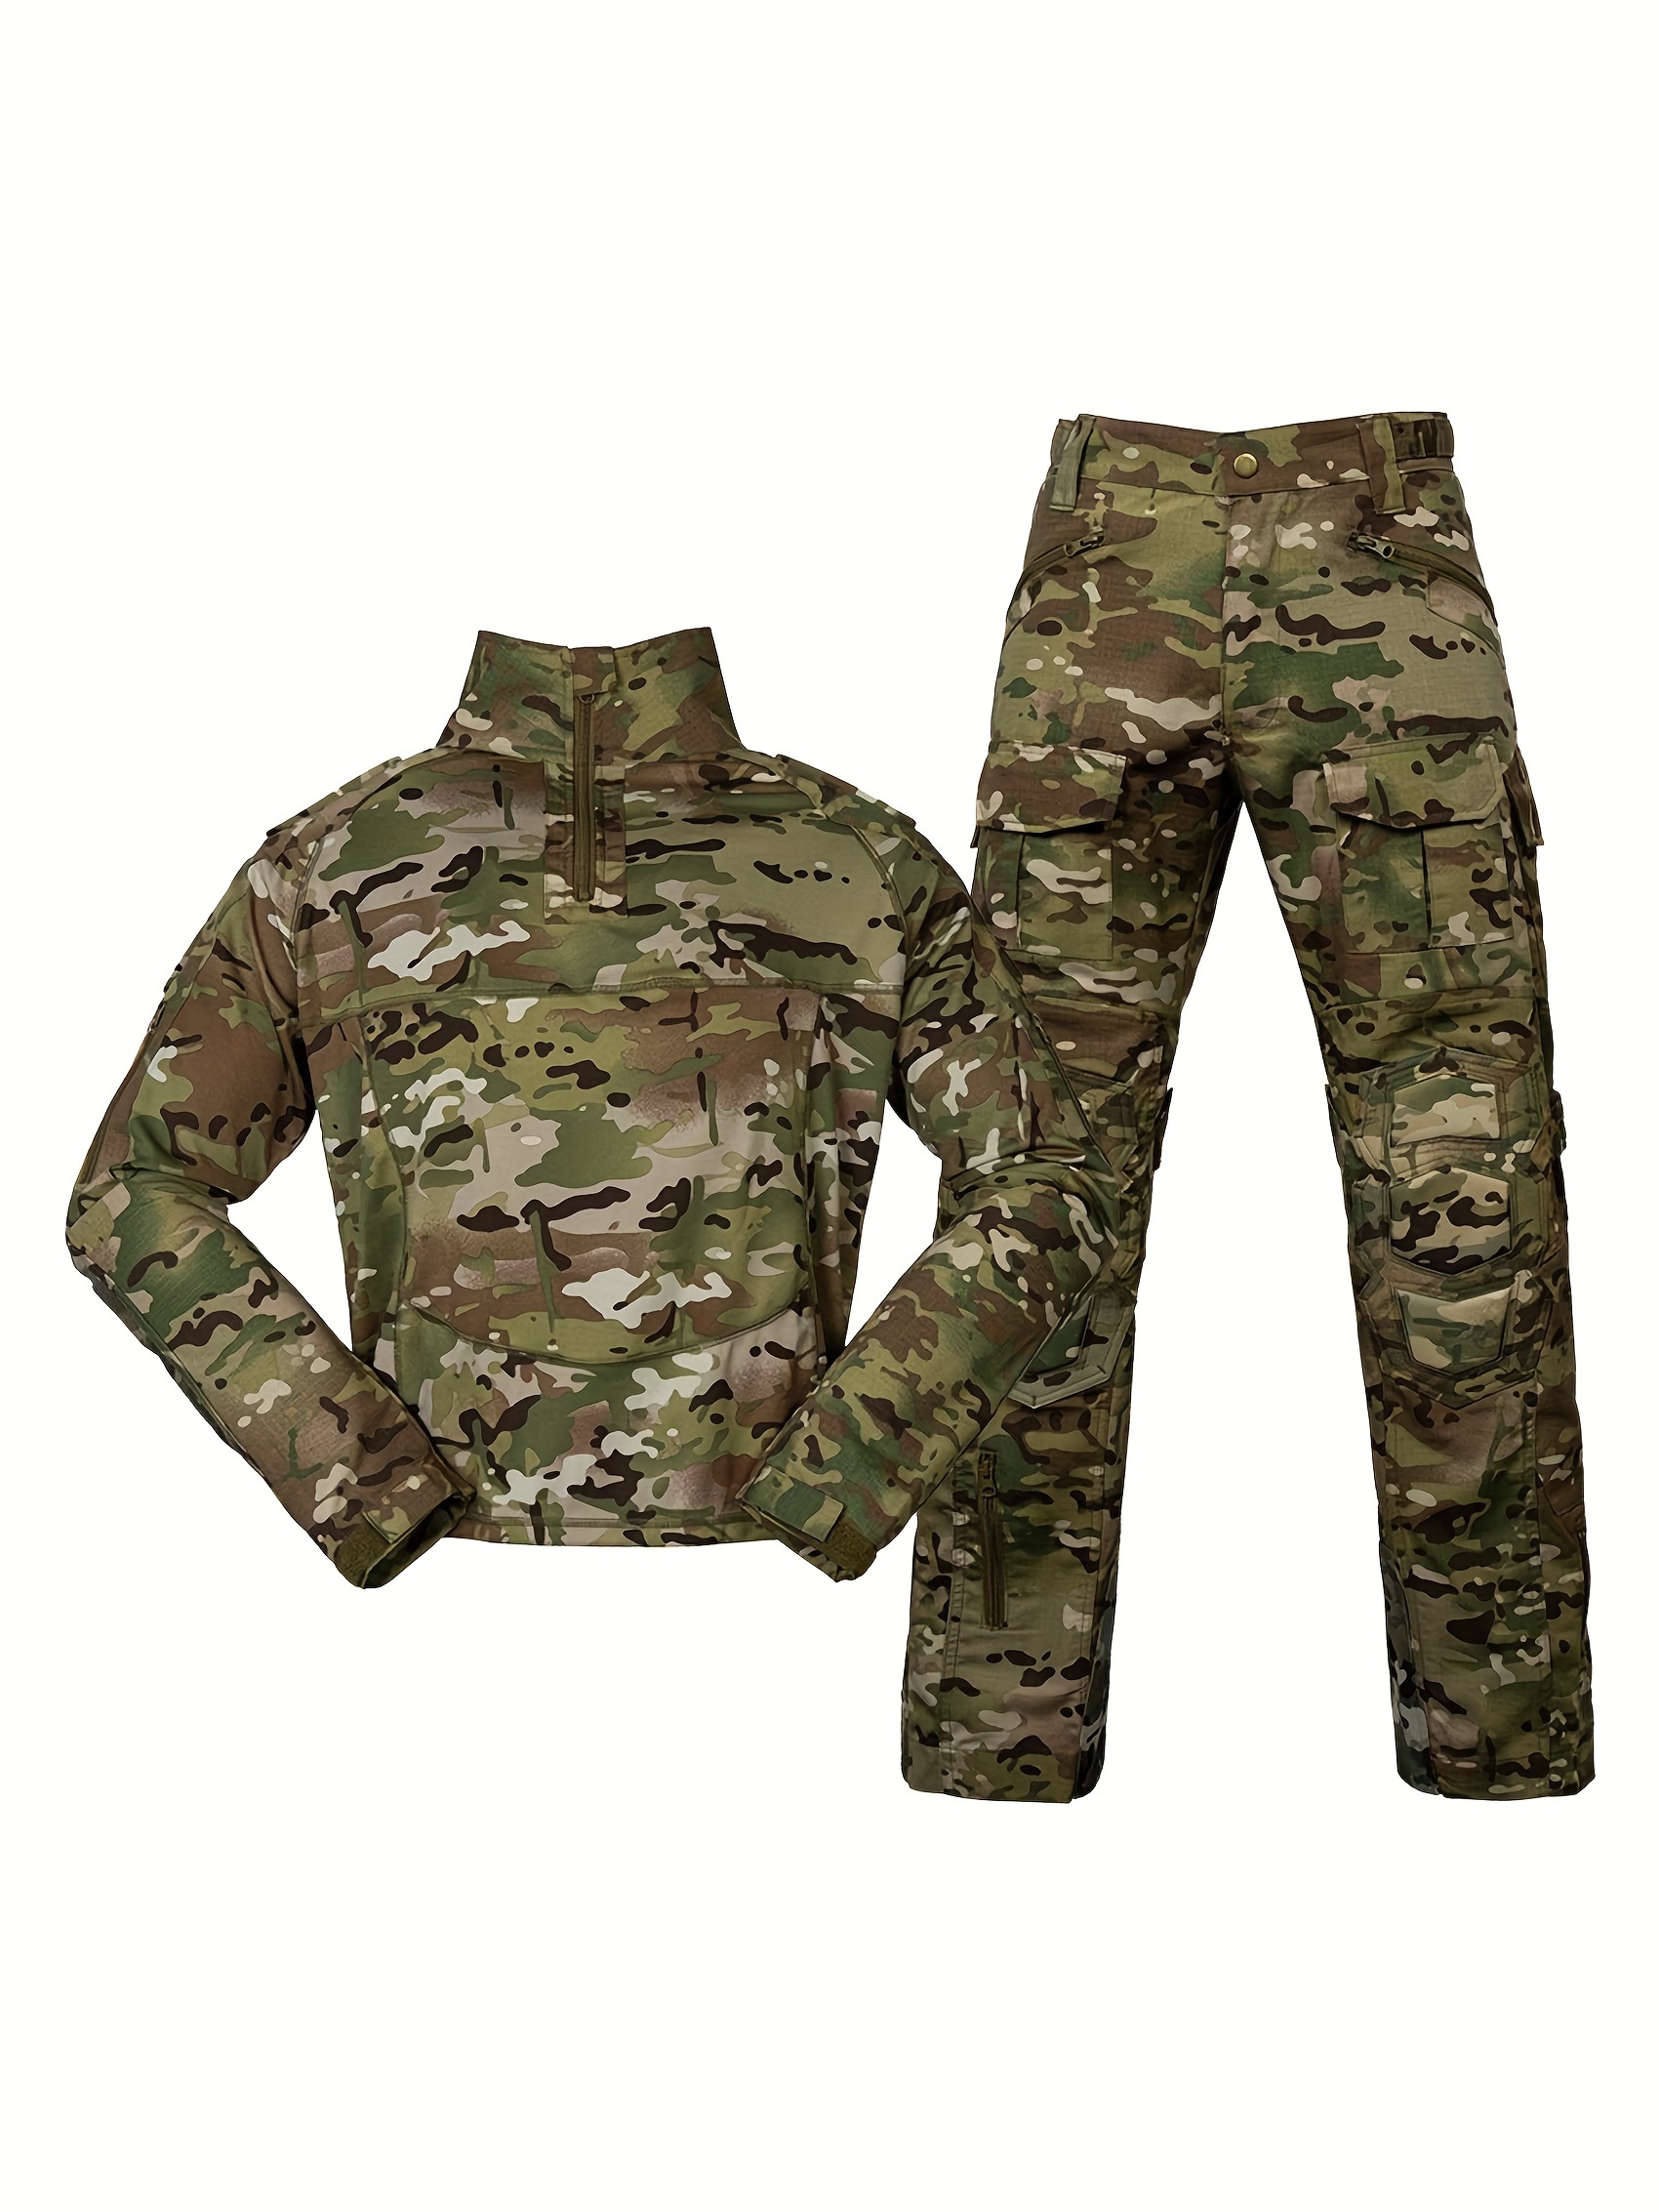 Uniforme militar de camuflaje táctico para hombre, ropa del